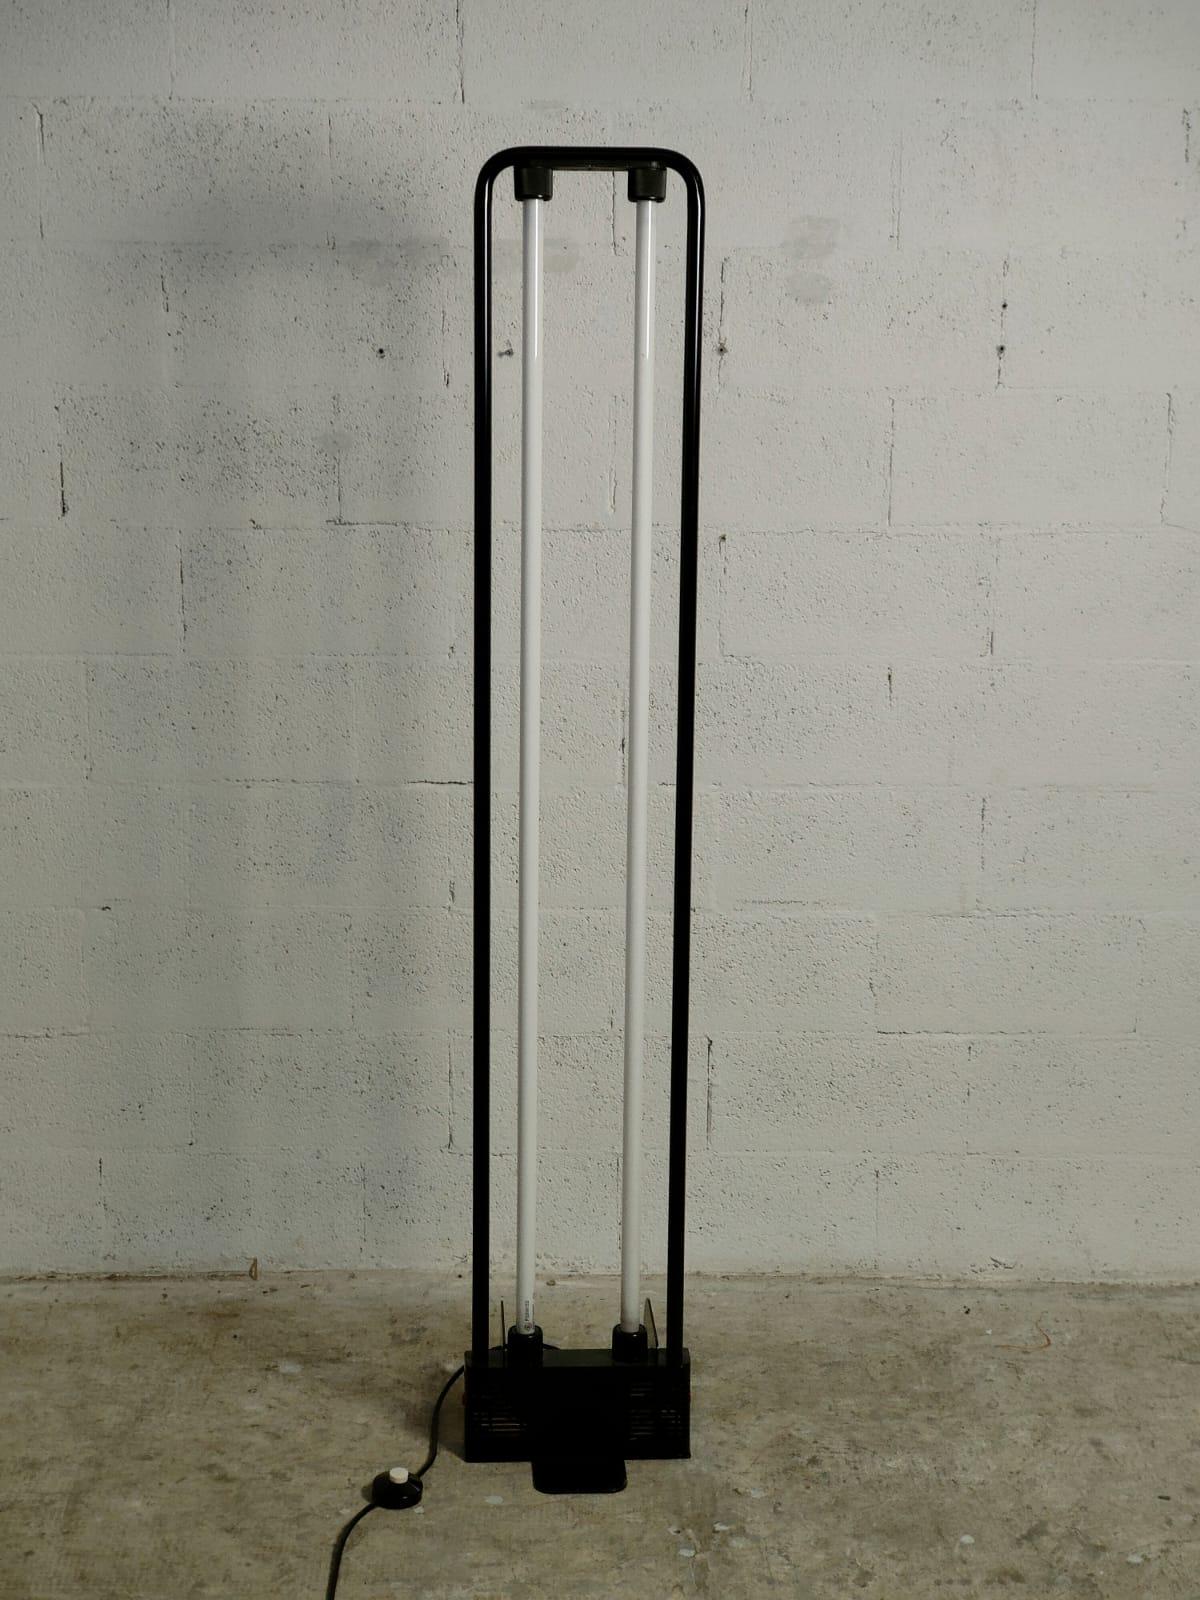 Design de lampadaire moderne de Gian Nicola Gigante, Marilena Boccato et Antonio Zambusi en 1981 pour Zerbetto. 
Structure en métal laqué noir avec double néon, base en métal noir.
Ces lampes, de conception simpliste et géométrique, présentent un